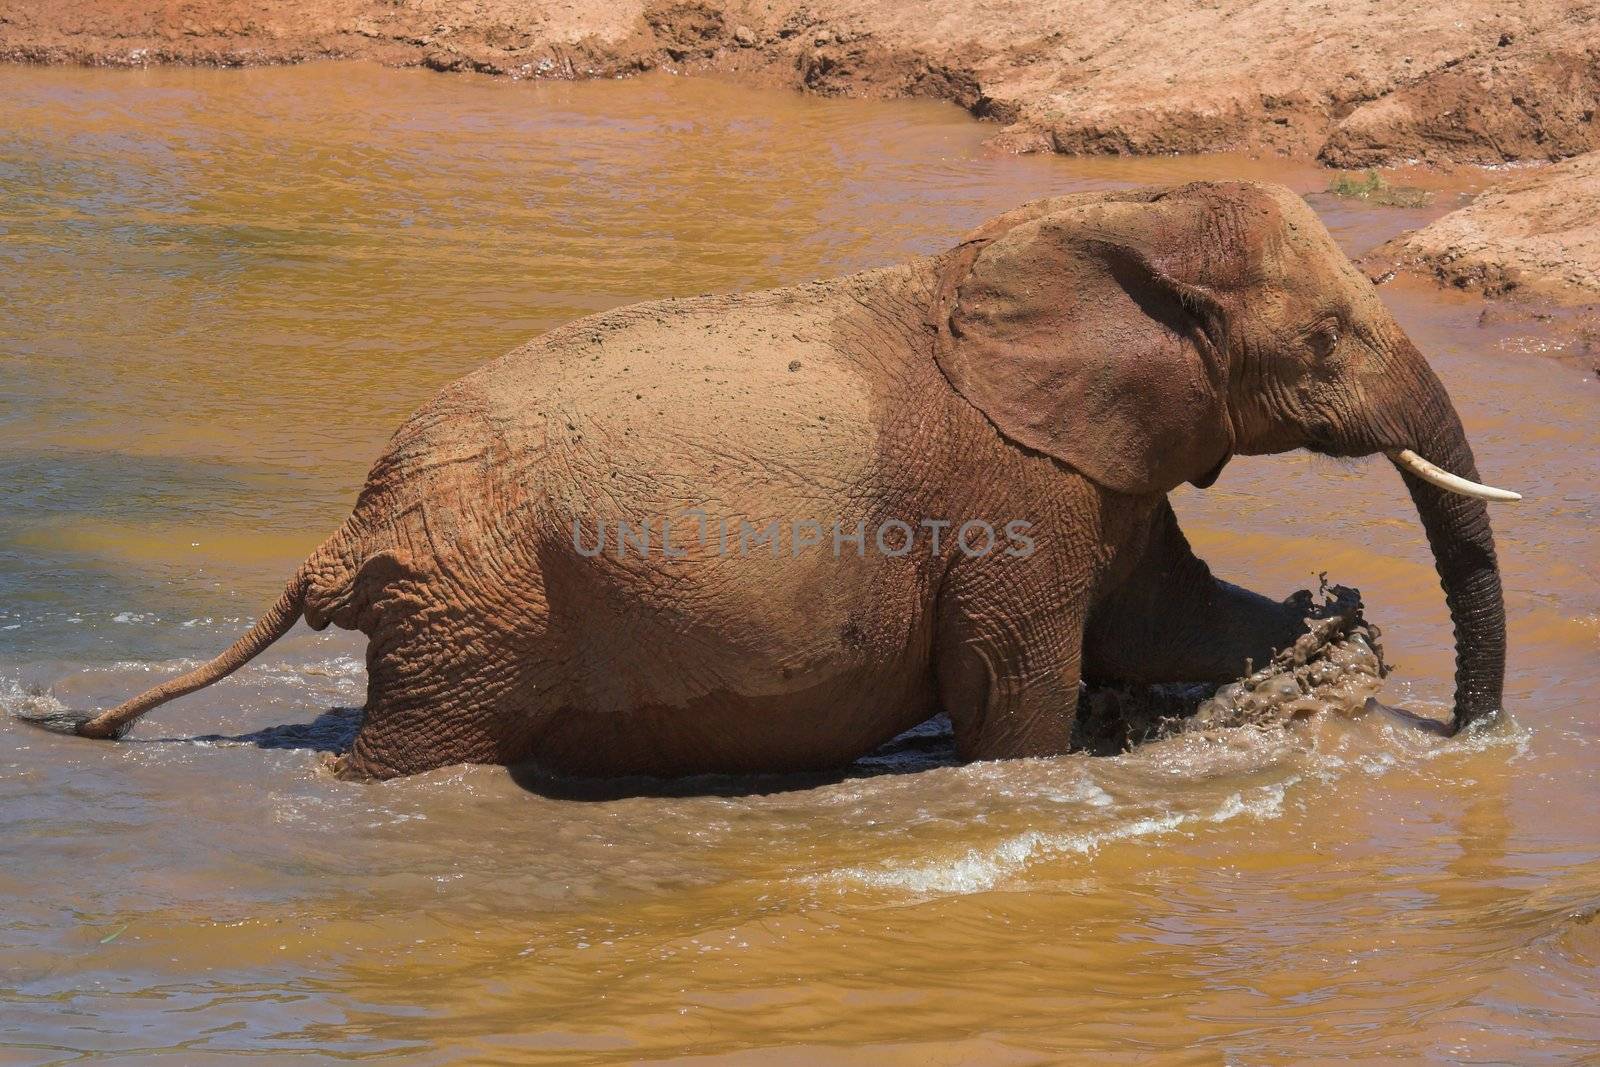 Elephant having a mud bath